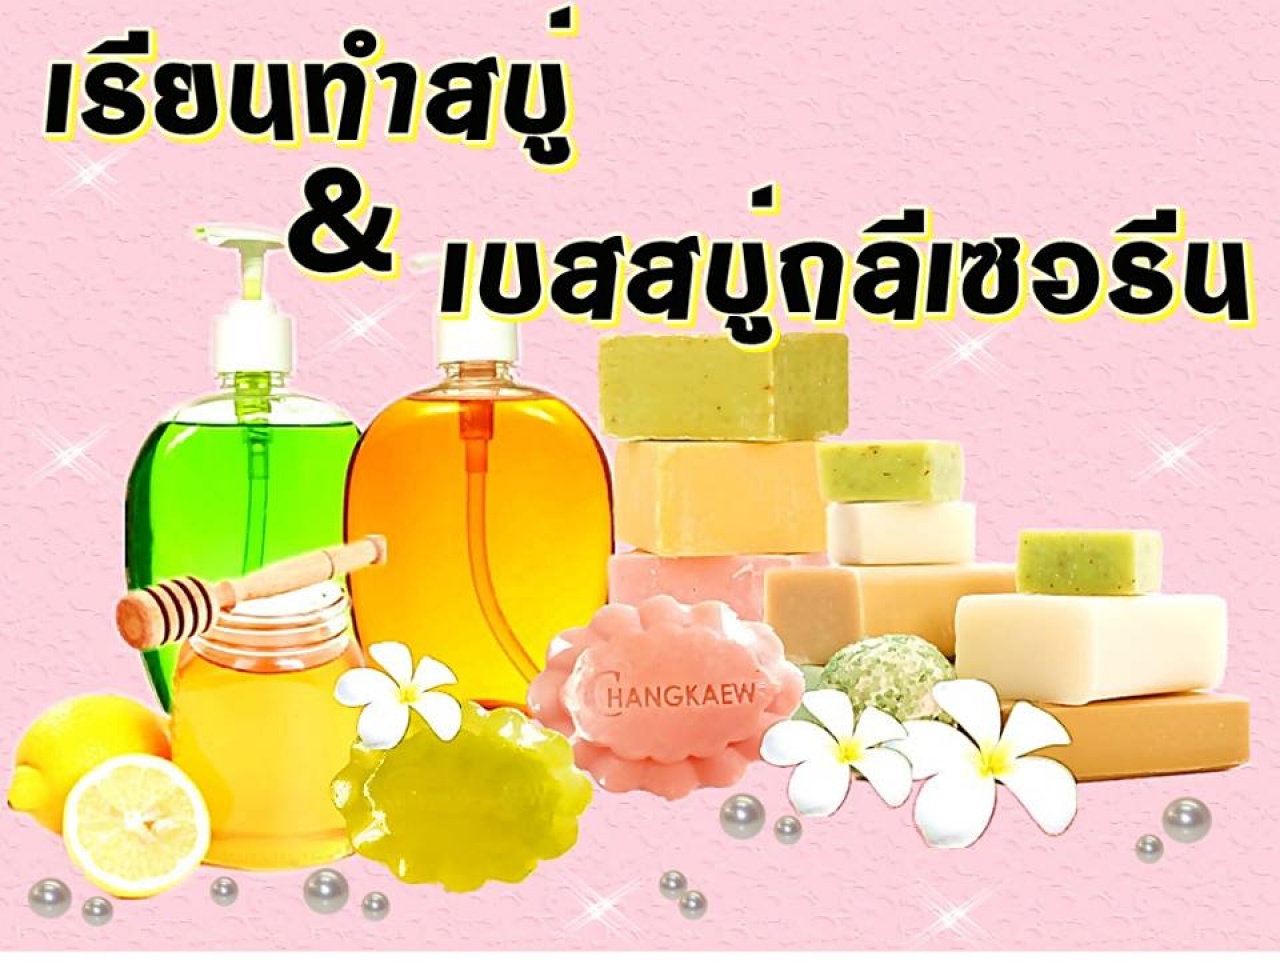  หลักสูตรการทำผลิตภัณฑ์สบู่ก้อน สบู่เหลวธรรมชาติ 100% จากสมุนไพรไทย